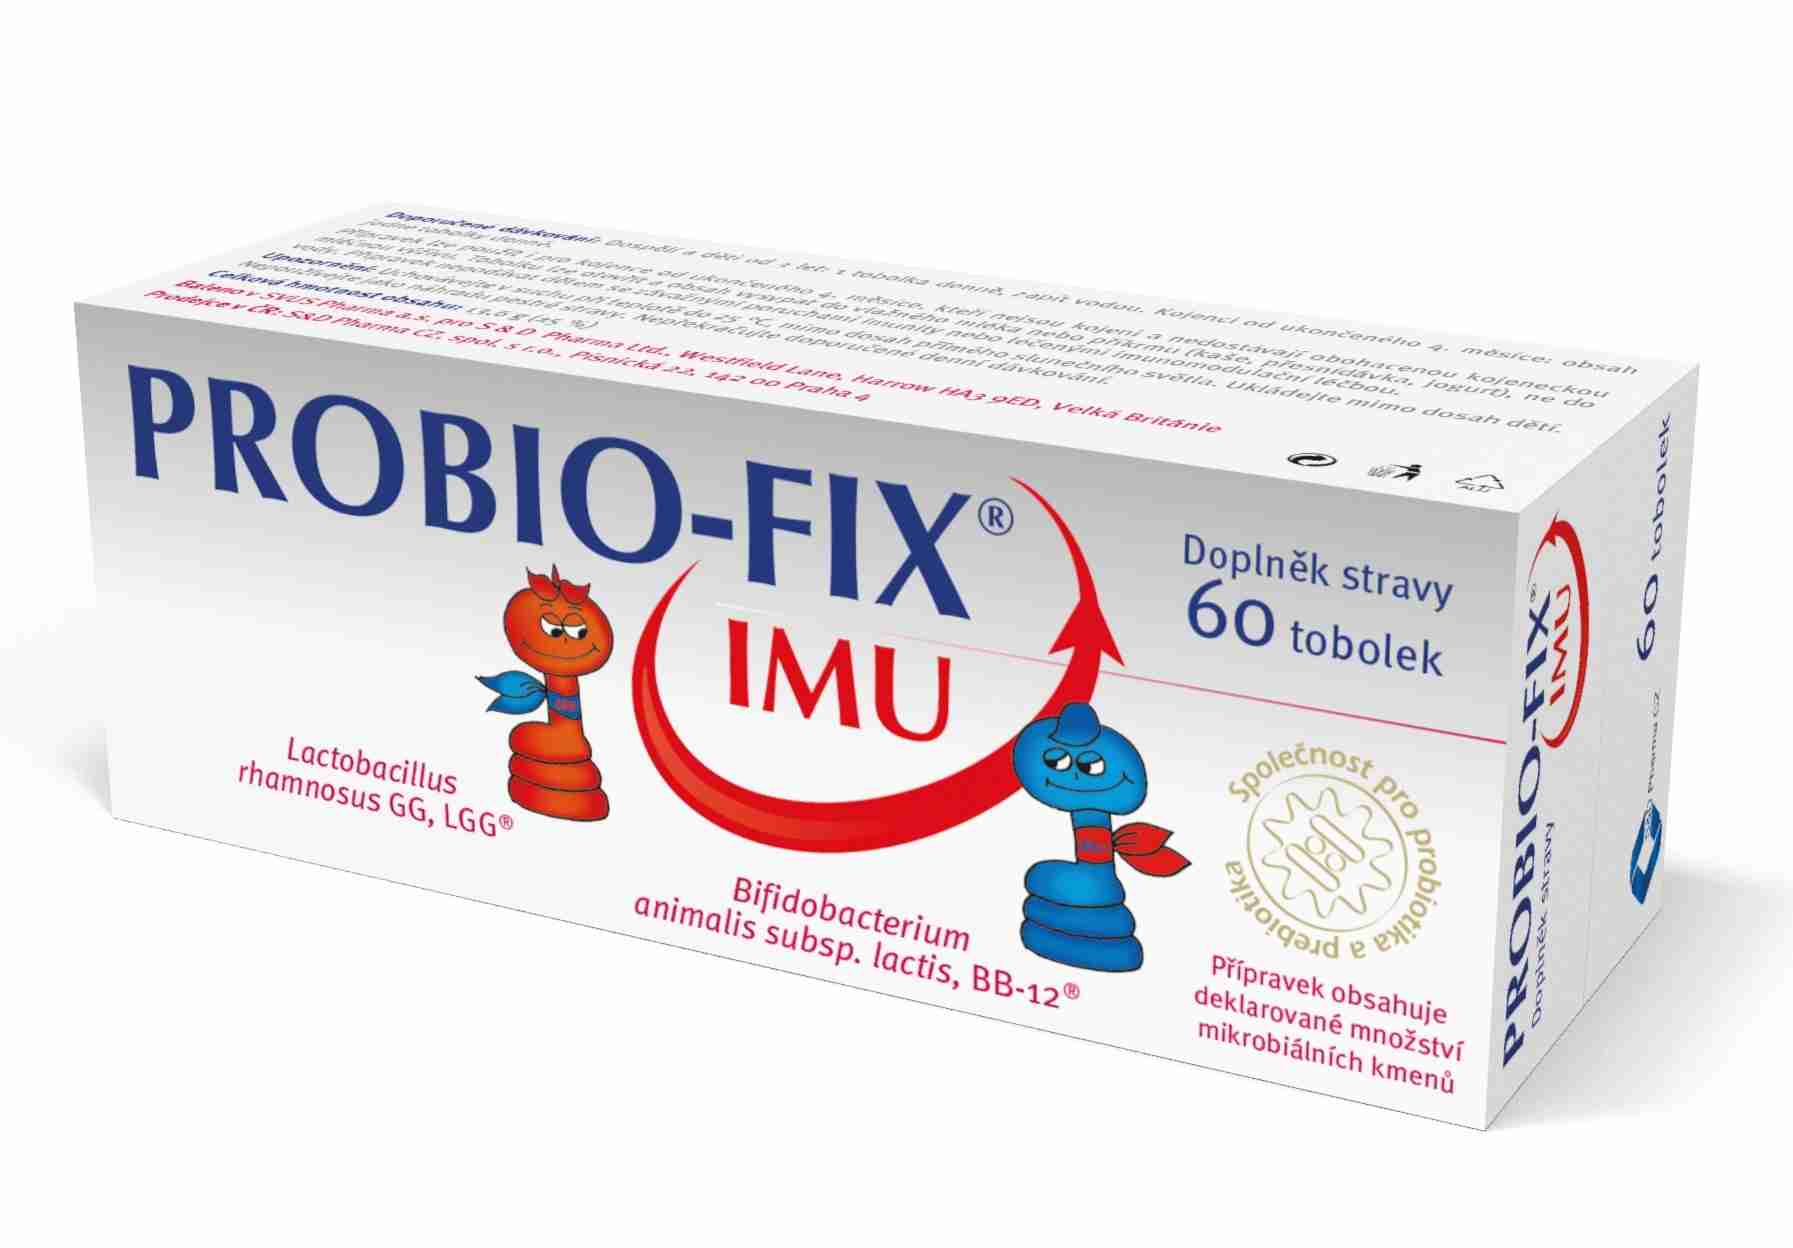 Probio-Fix IMU 60 tob.